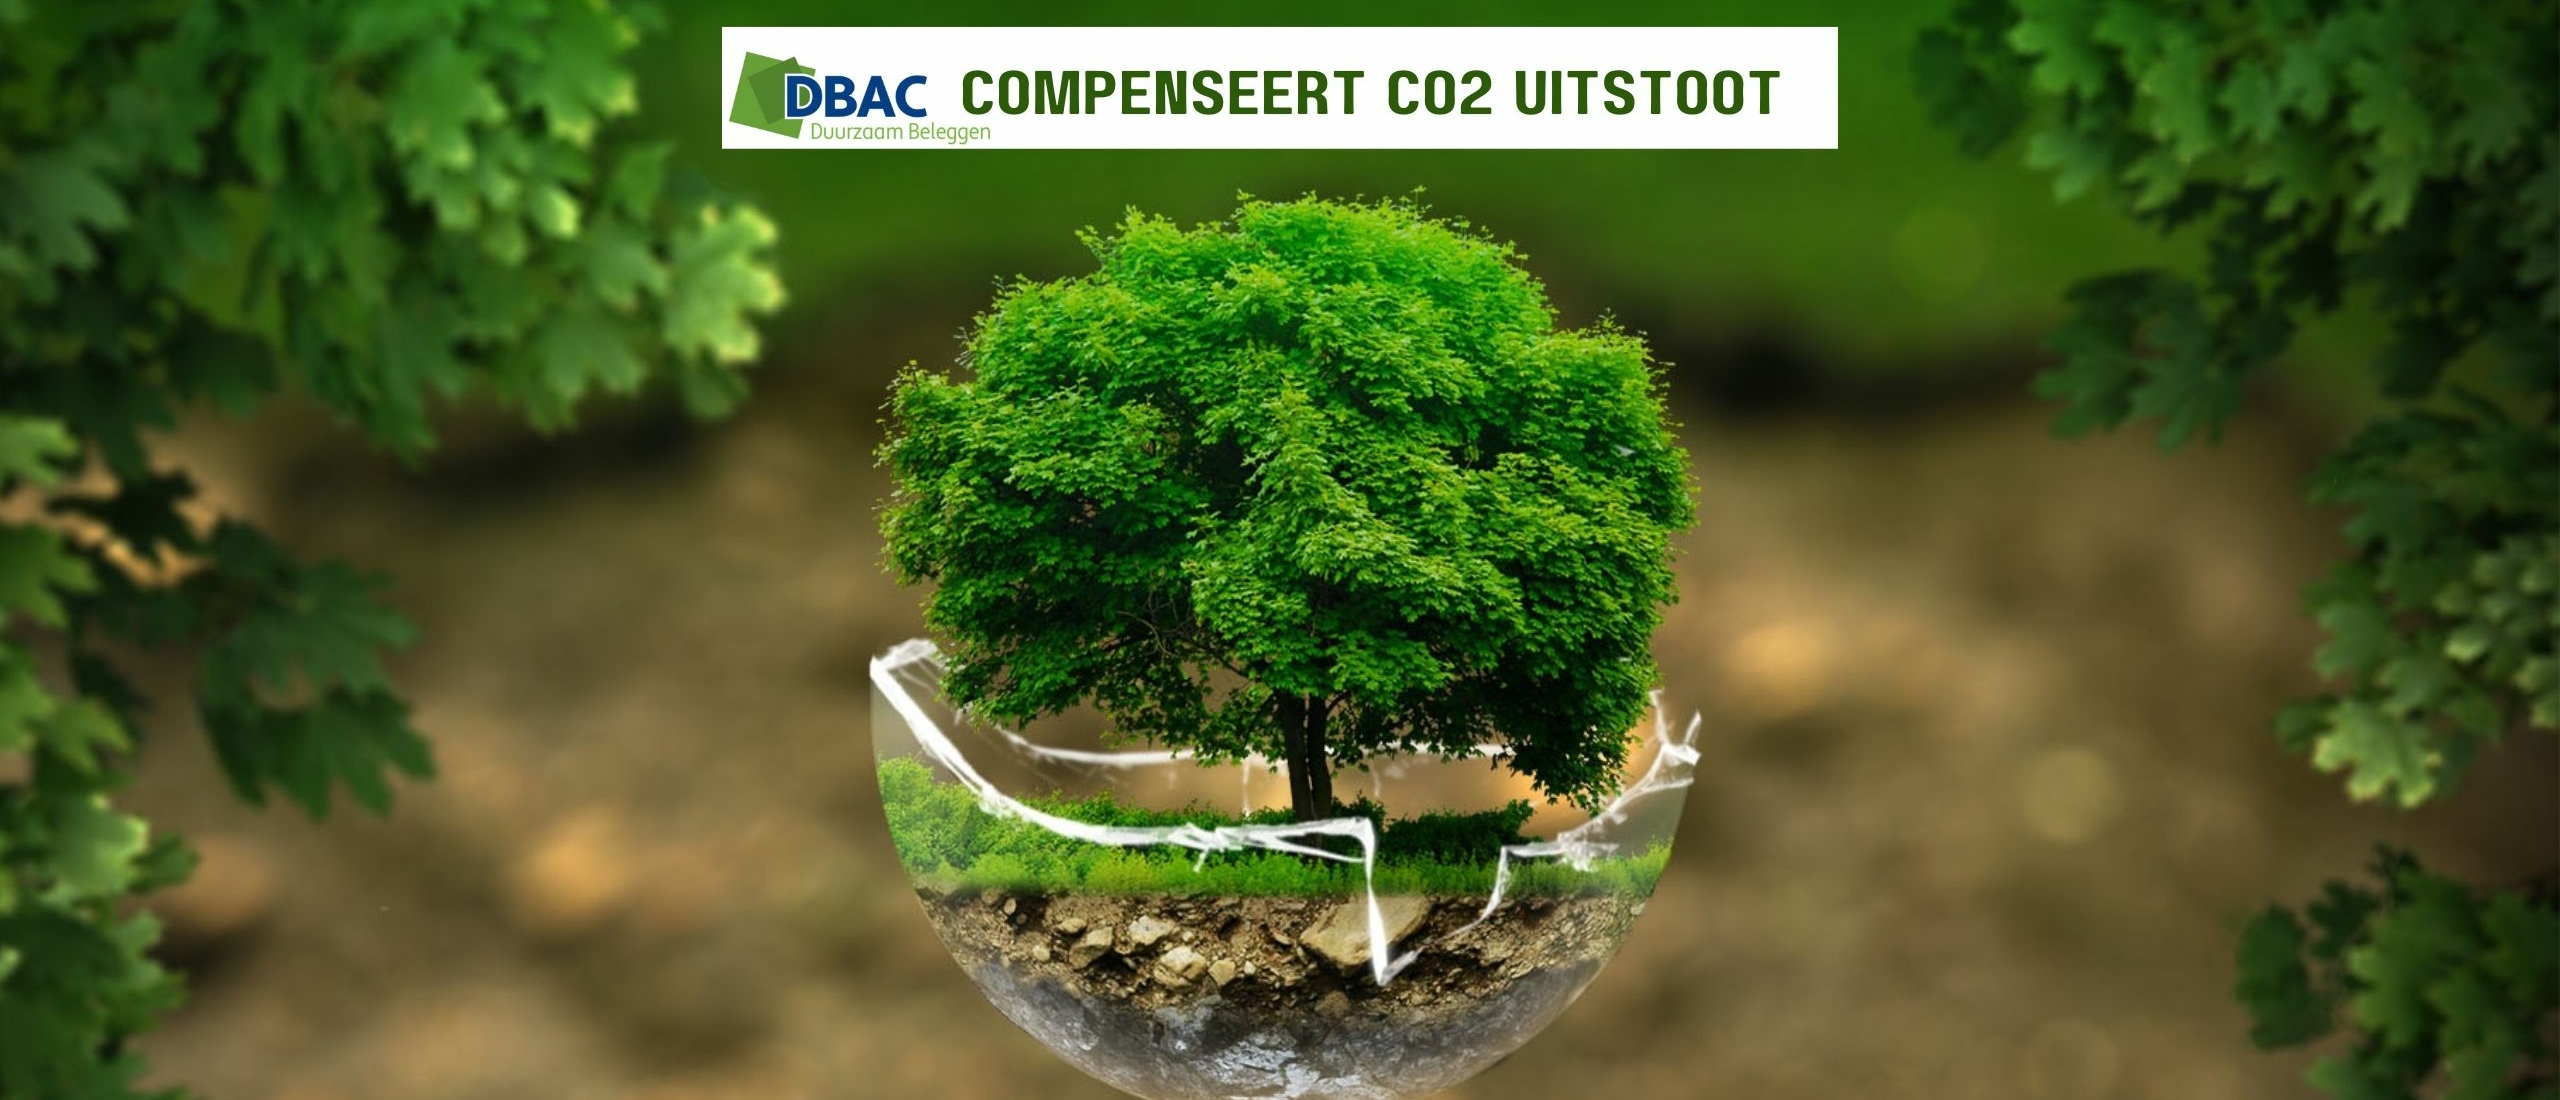 Hoe minimaliseert DBAC de CO2 uitstoot?